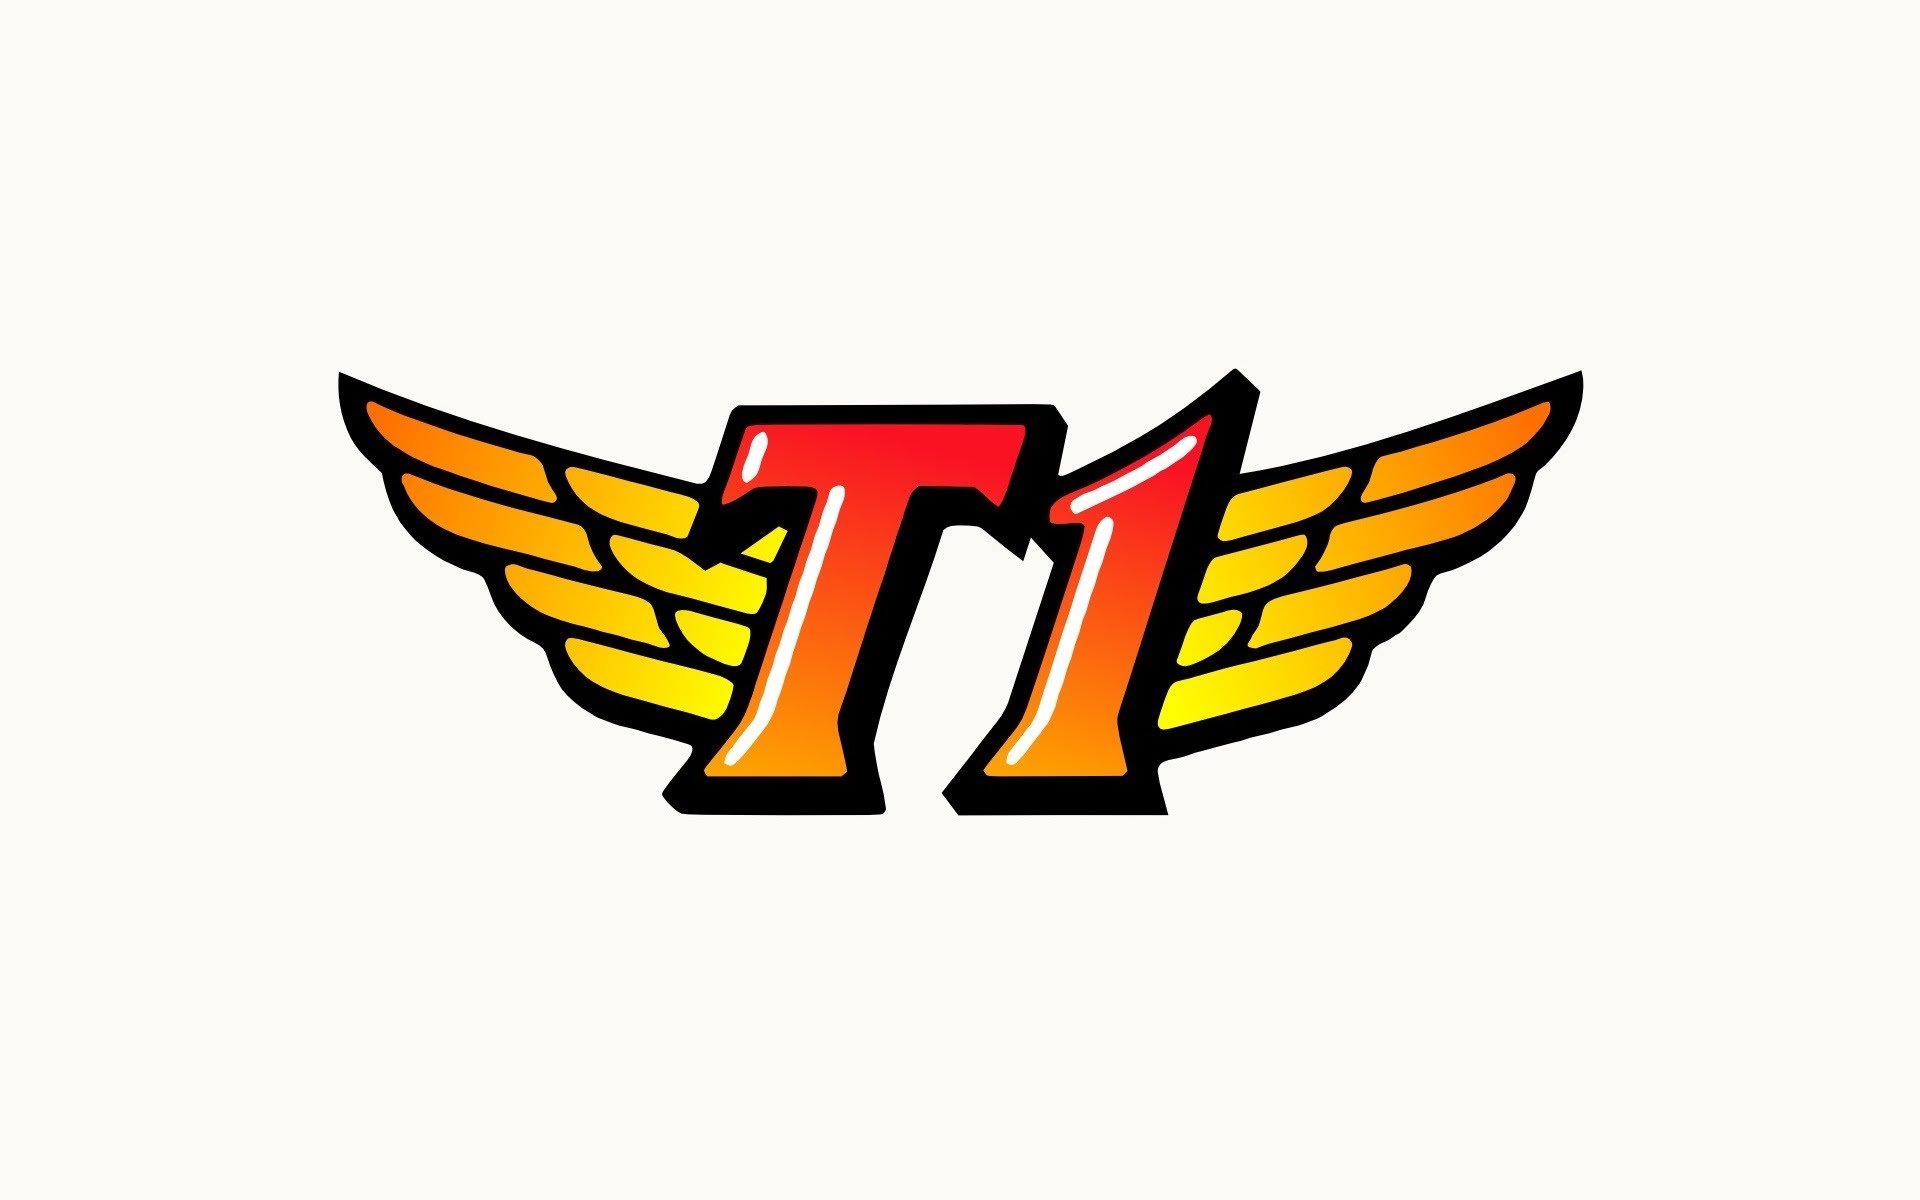 skt t1 old logo 2011 2012 2013 2014 2015 2016 2017 2018